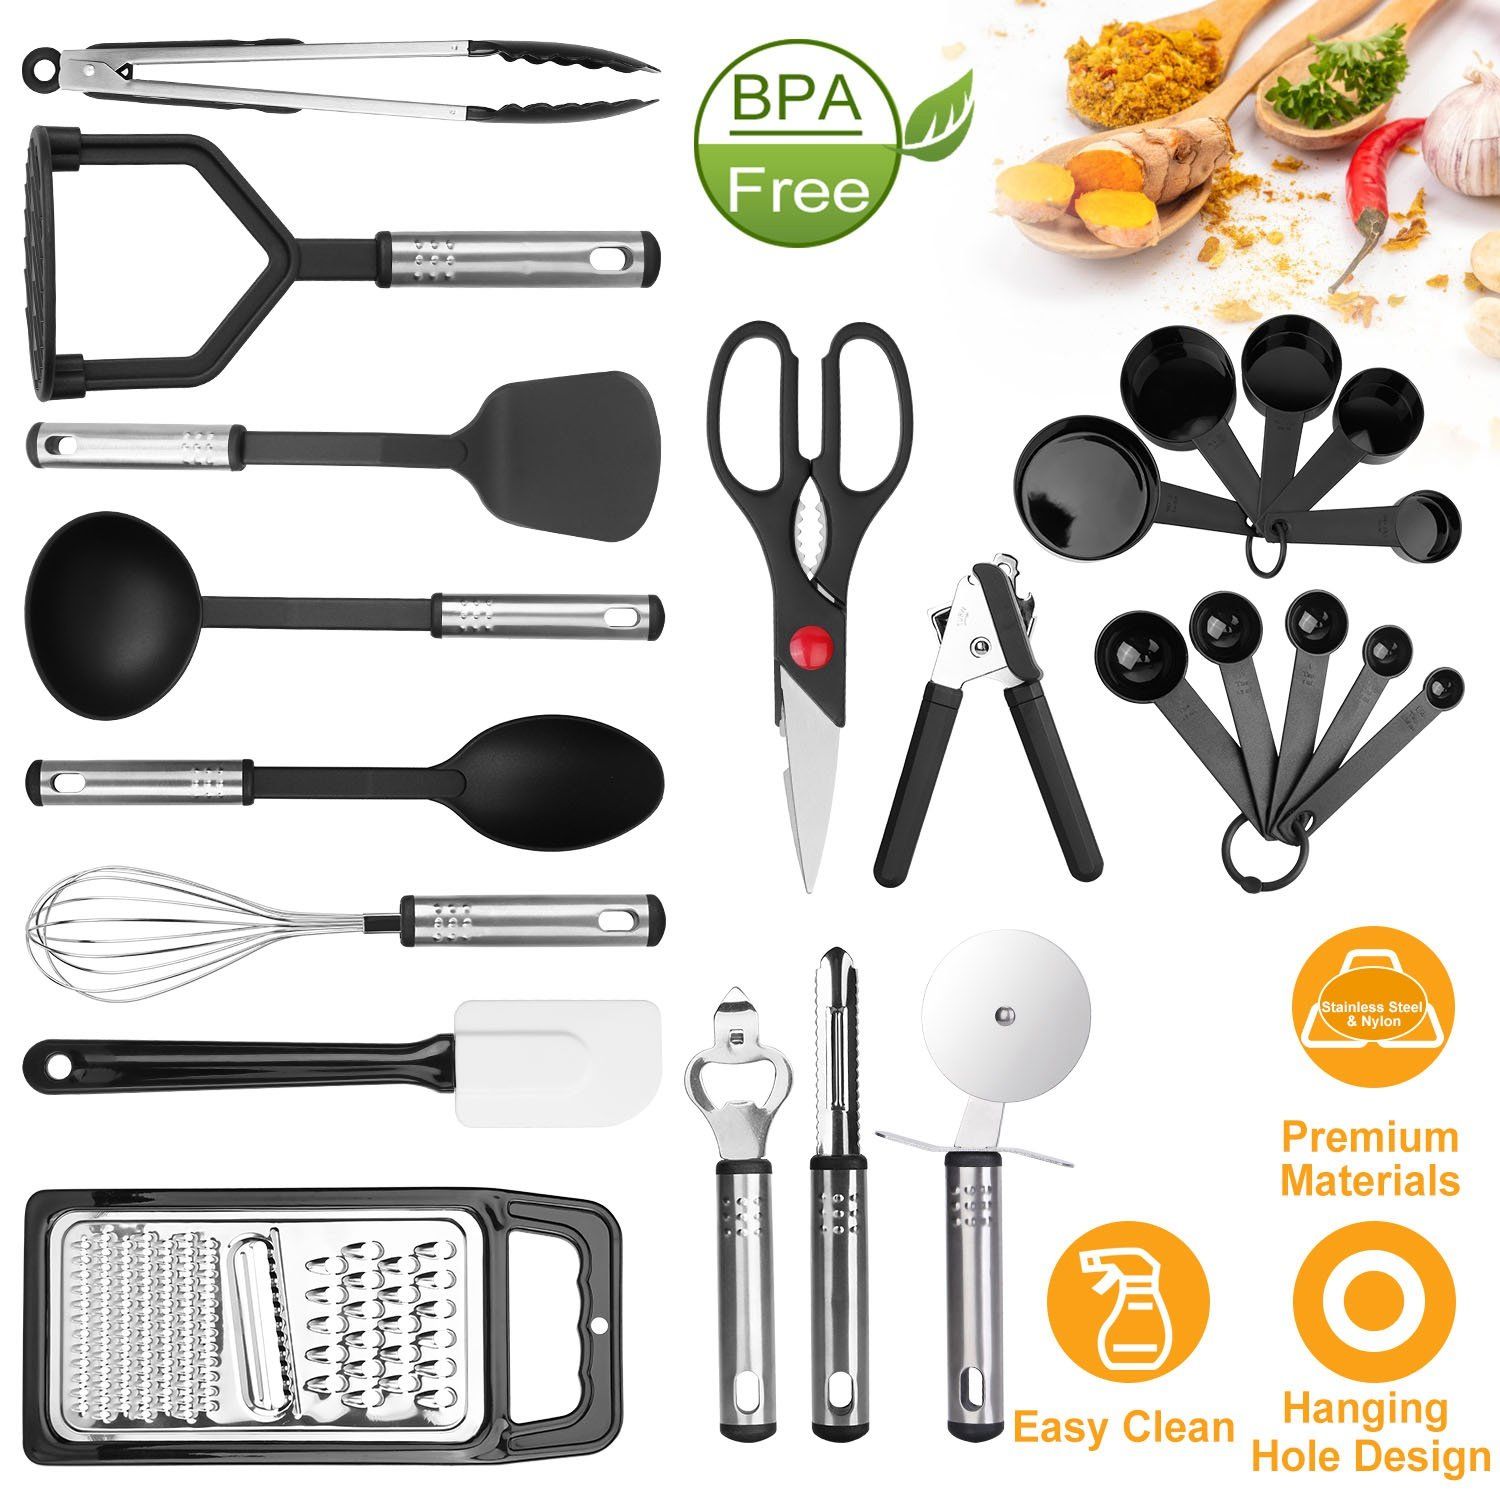 https://dailysale.com/cdn/shop/products/23-piece-set-kitchen-utensil-set-stainless-steel-nylon-kitchen-dining-dailysale-800348.jpg?v=1609184186